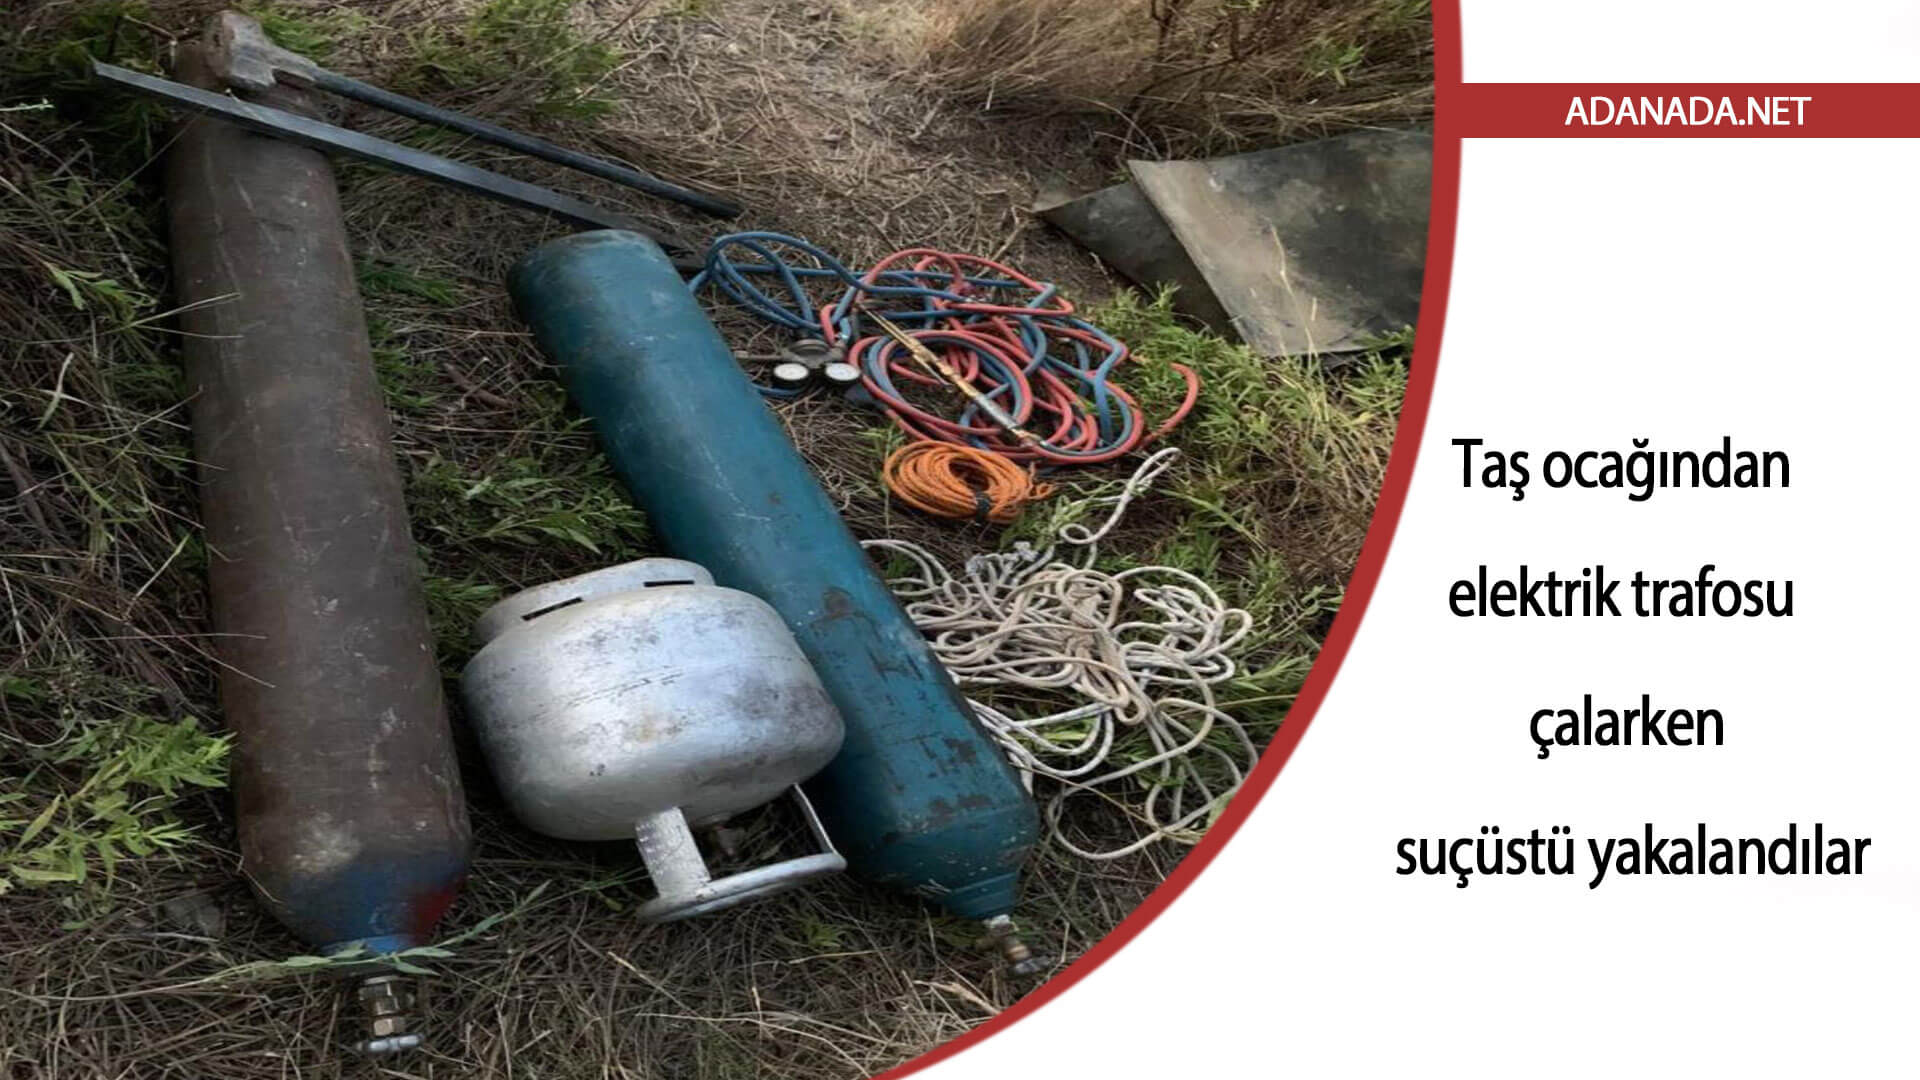 Adana’da taş ocağından elektrik trafosu çalmak isteyen 3 şüpheli suçüstü yakalandı